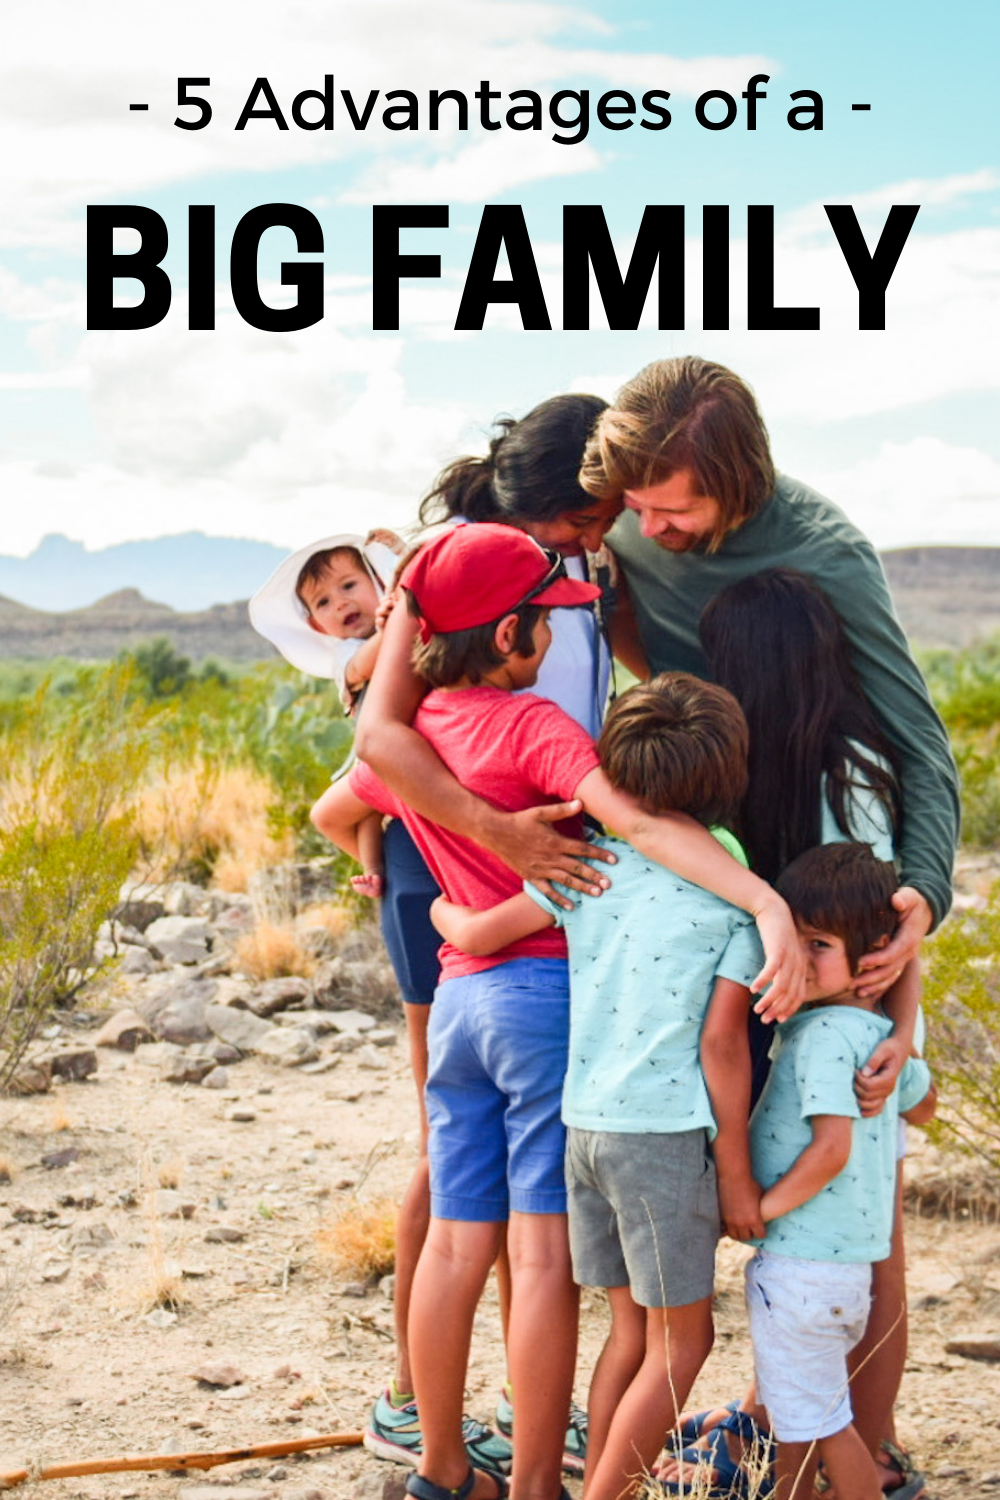 5 advantages of a big family